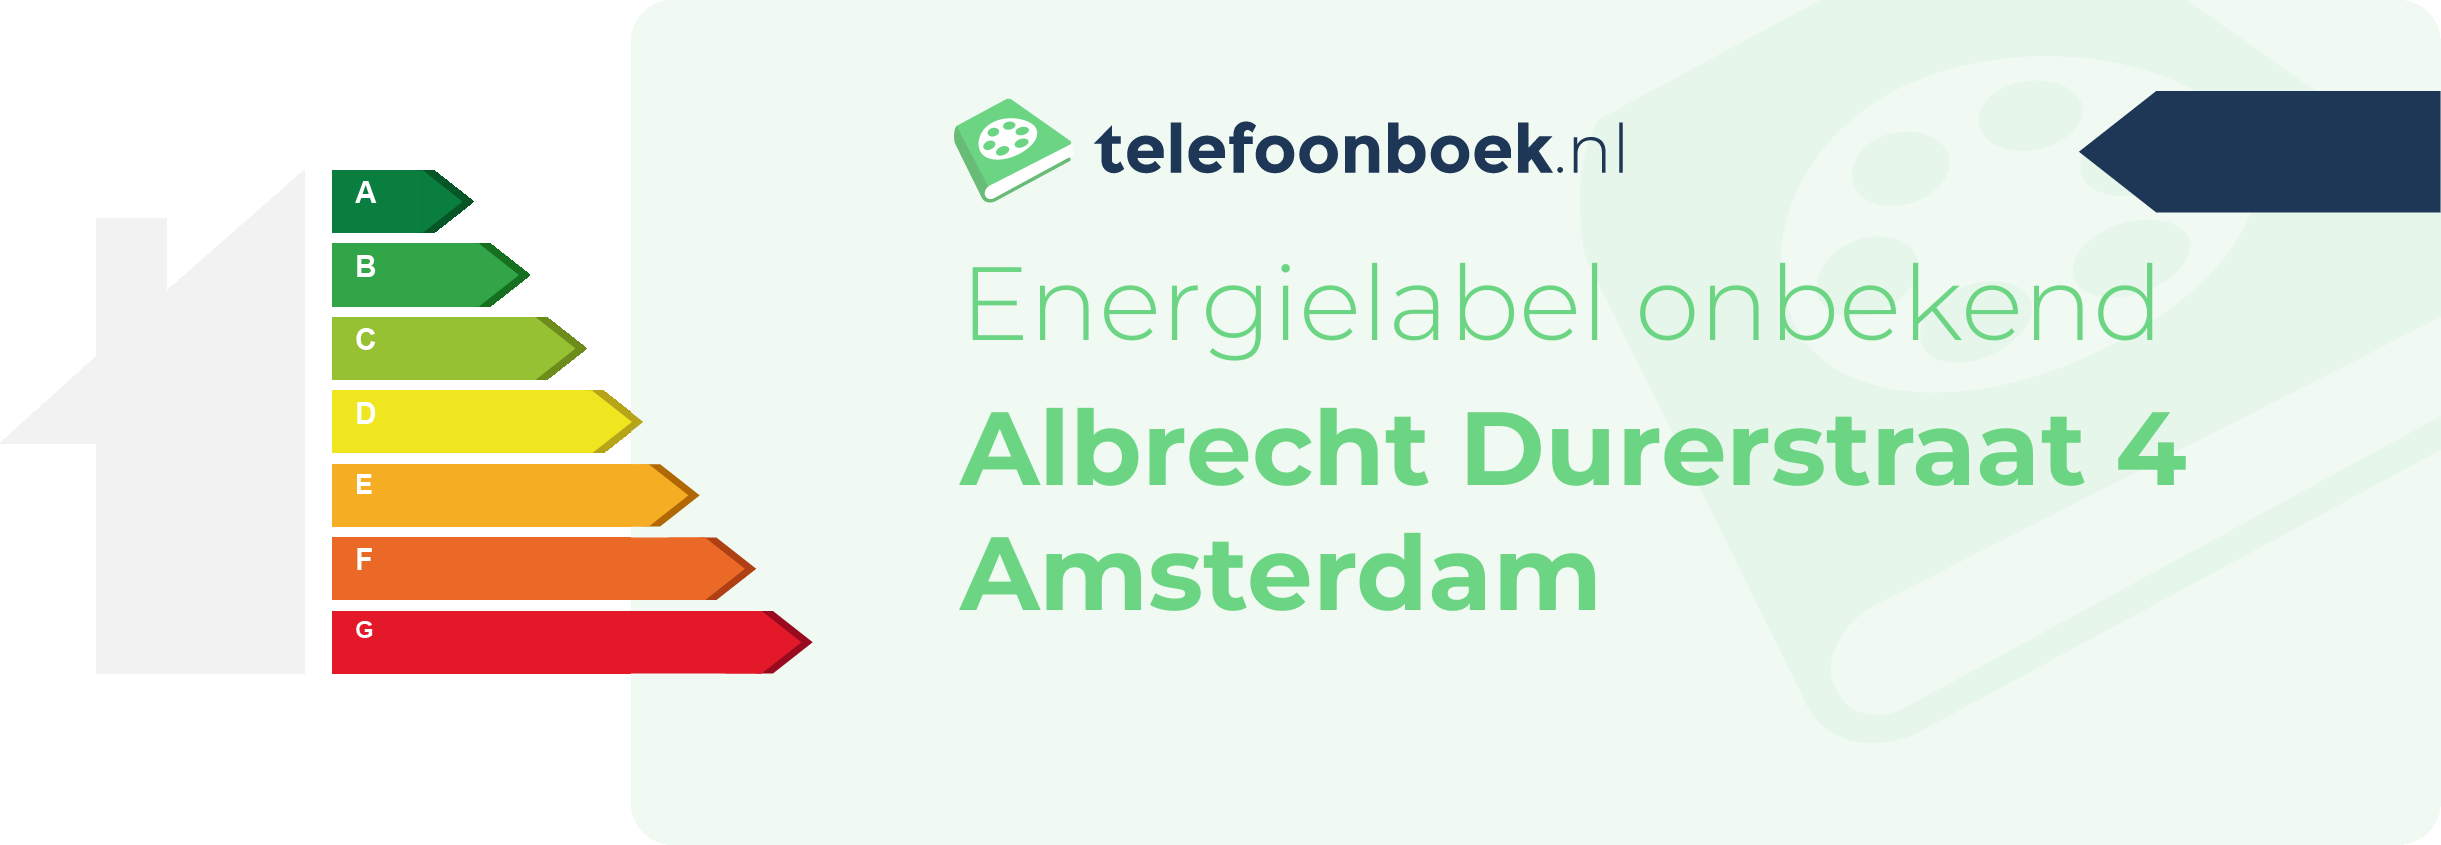 Energielabel Albrecht Durerstraat 4 Amsterdam